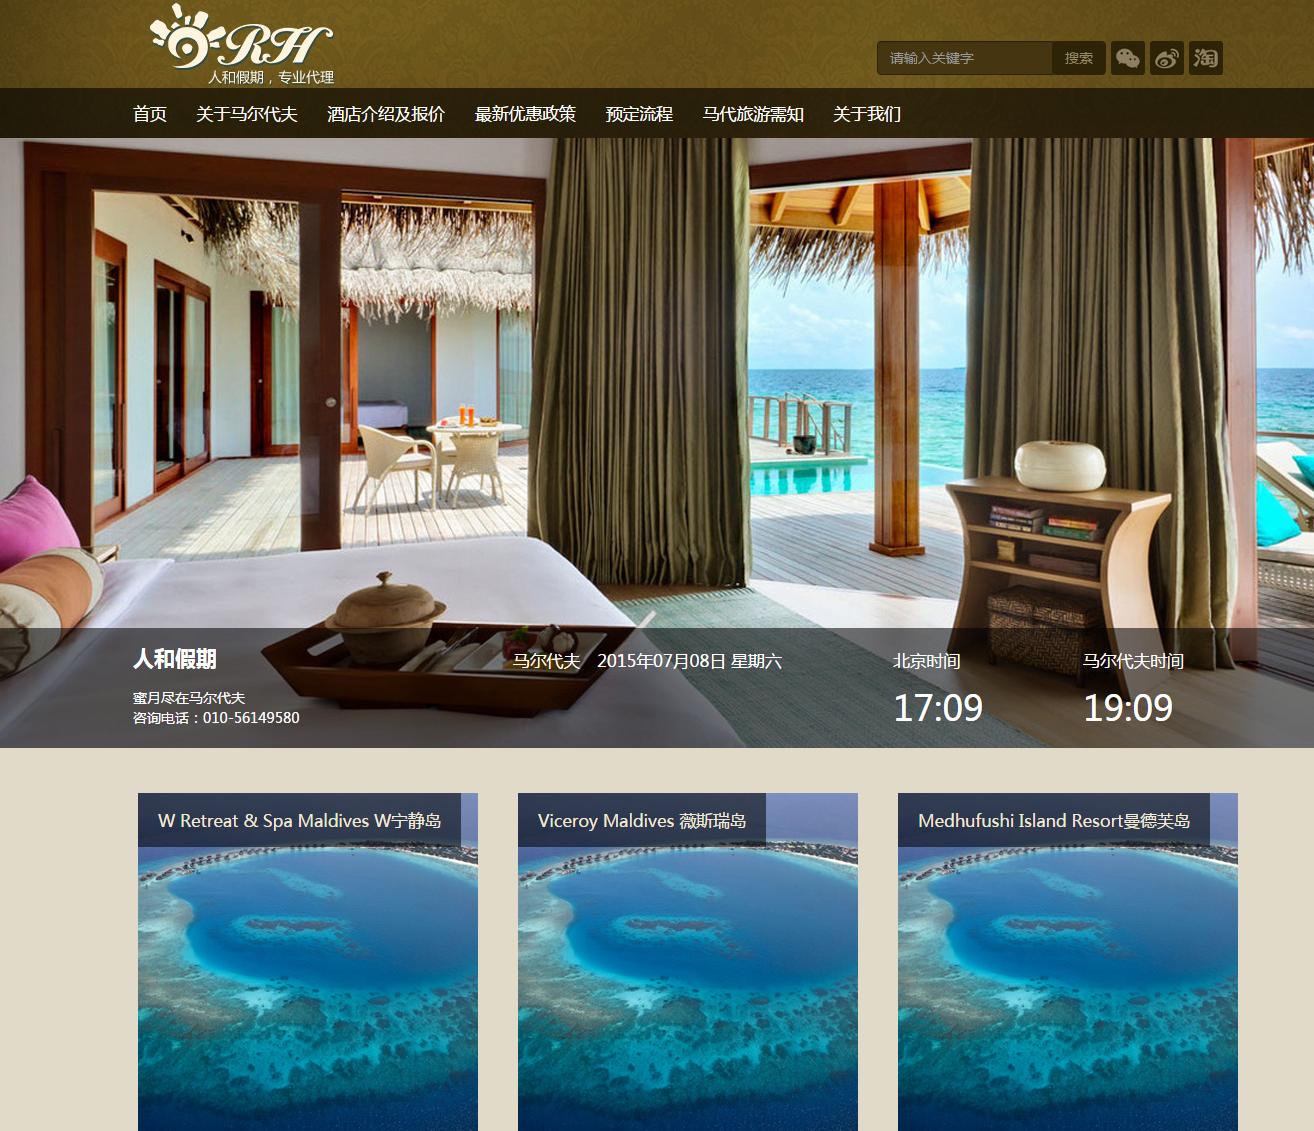 马尔代夫旅游响应式网站模板